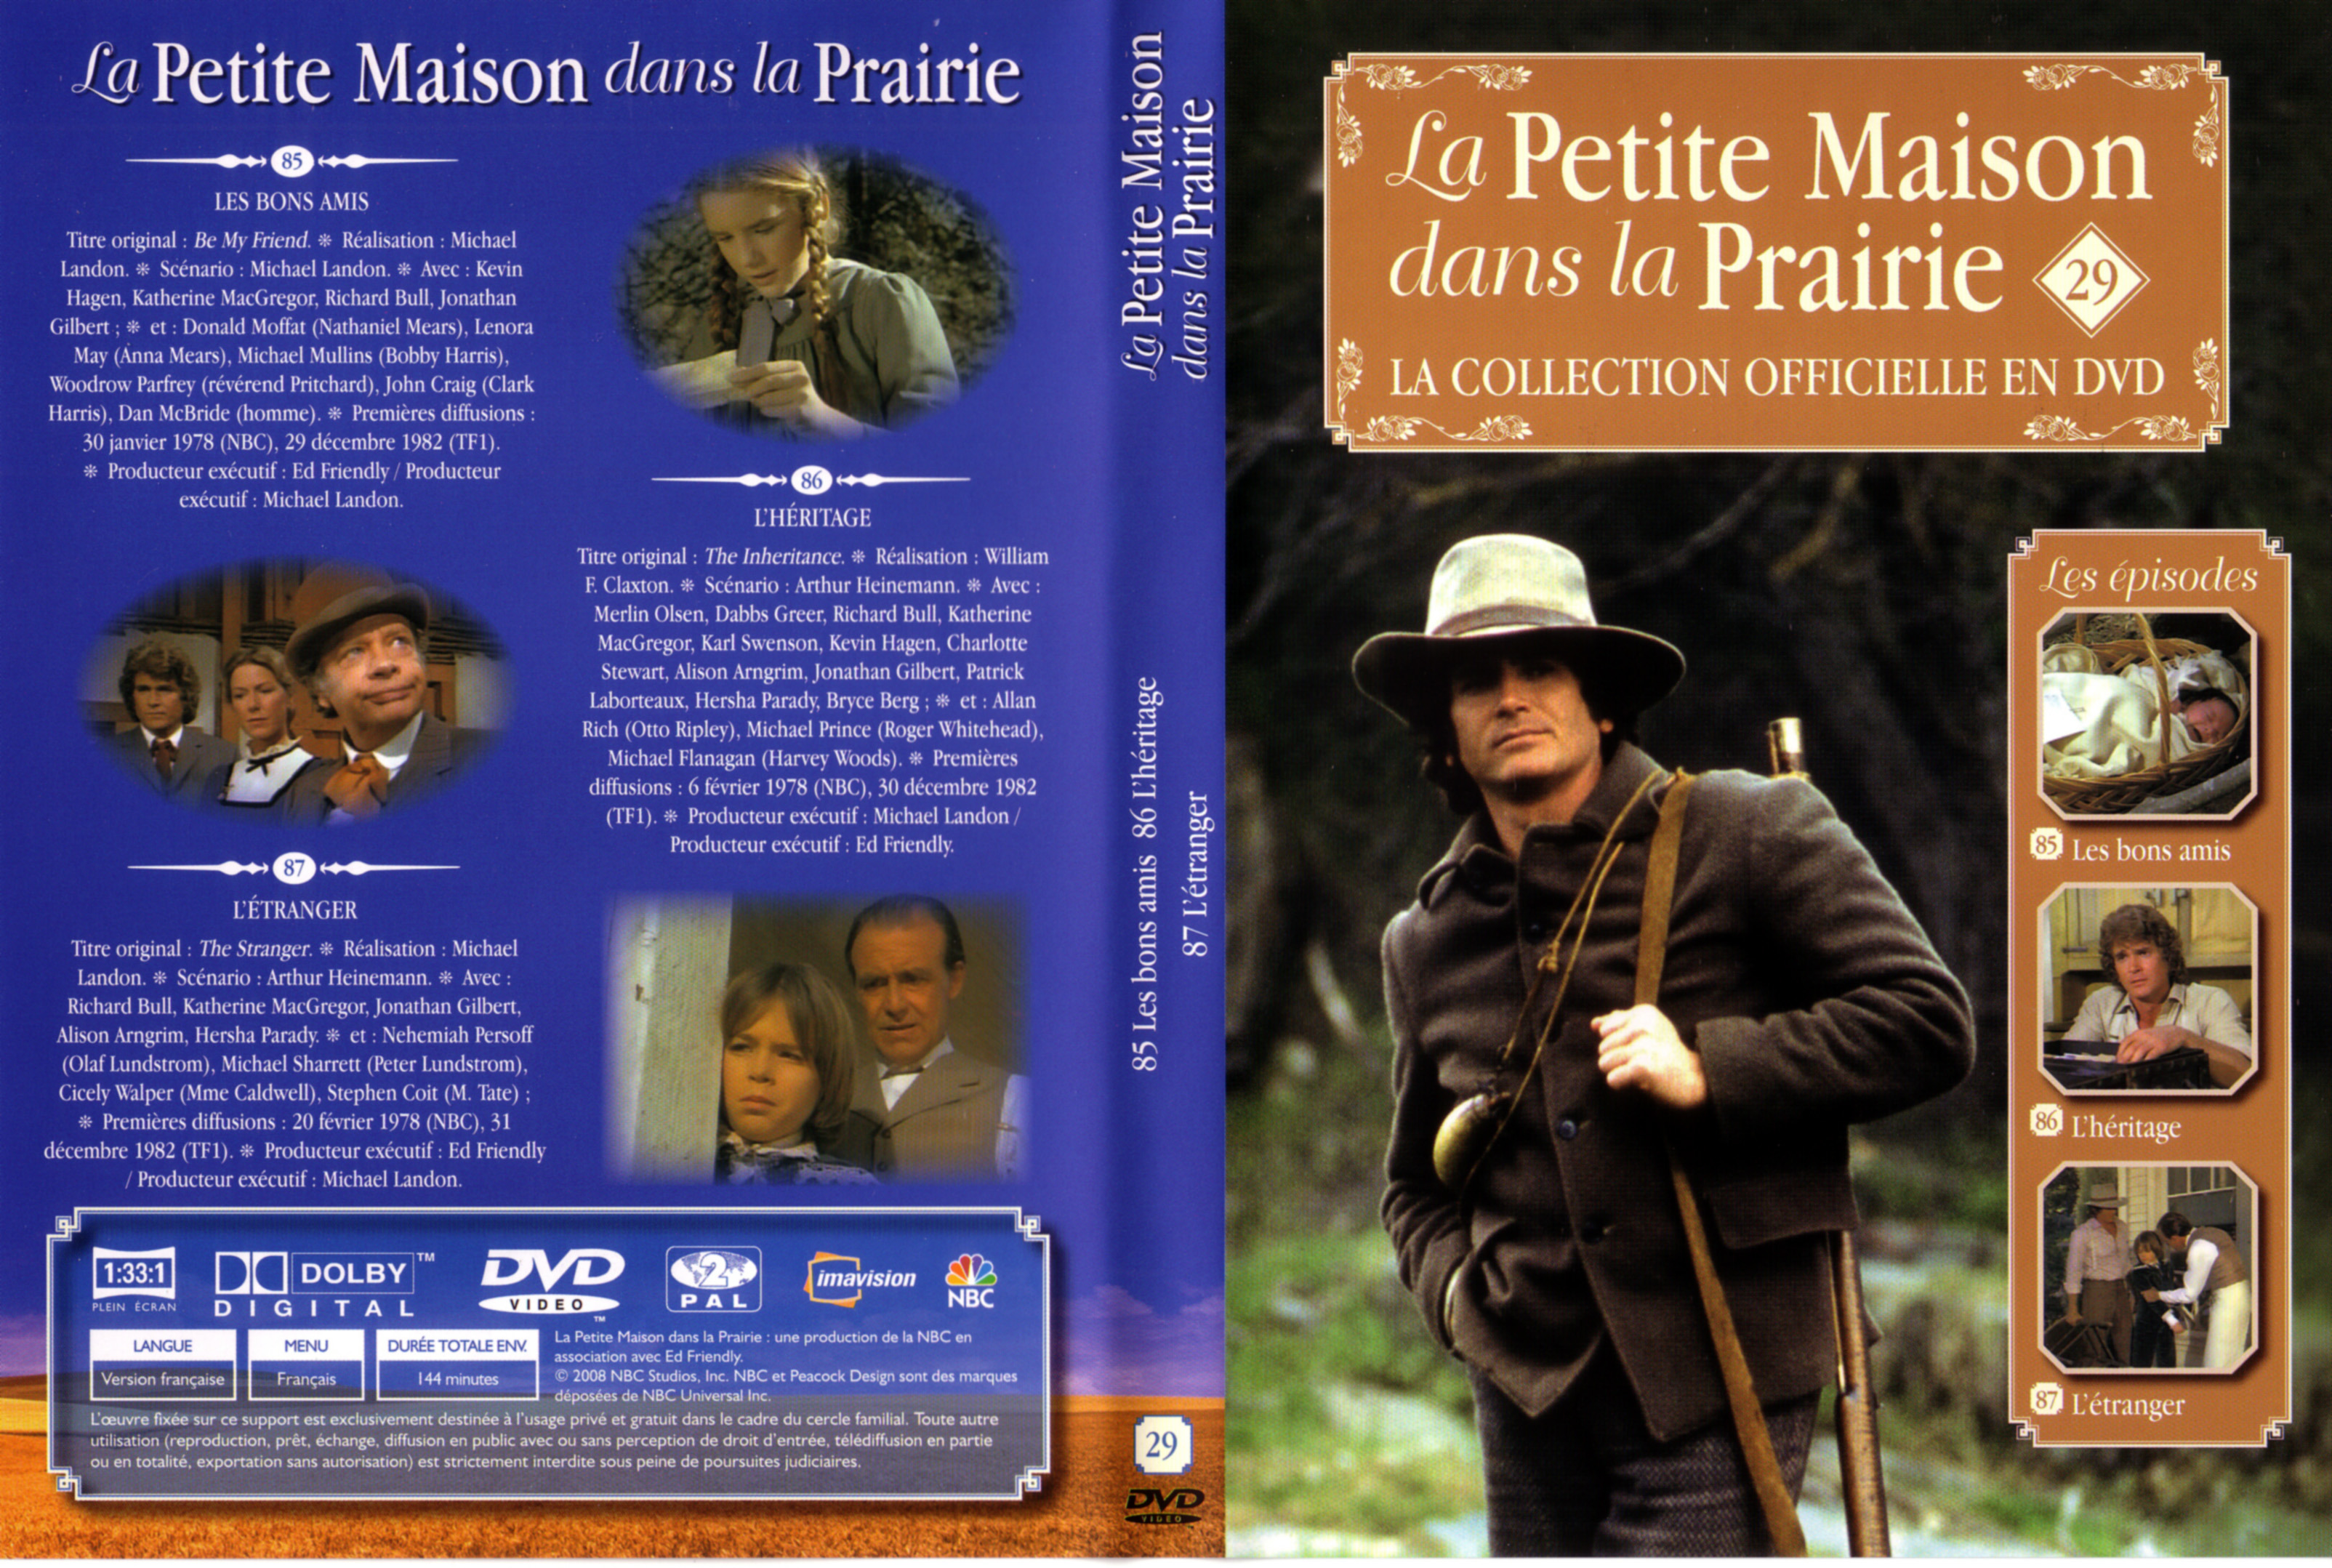 Jaquette DVD La petite maison dans la prairie La Collection vol 29